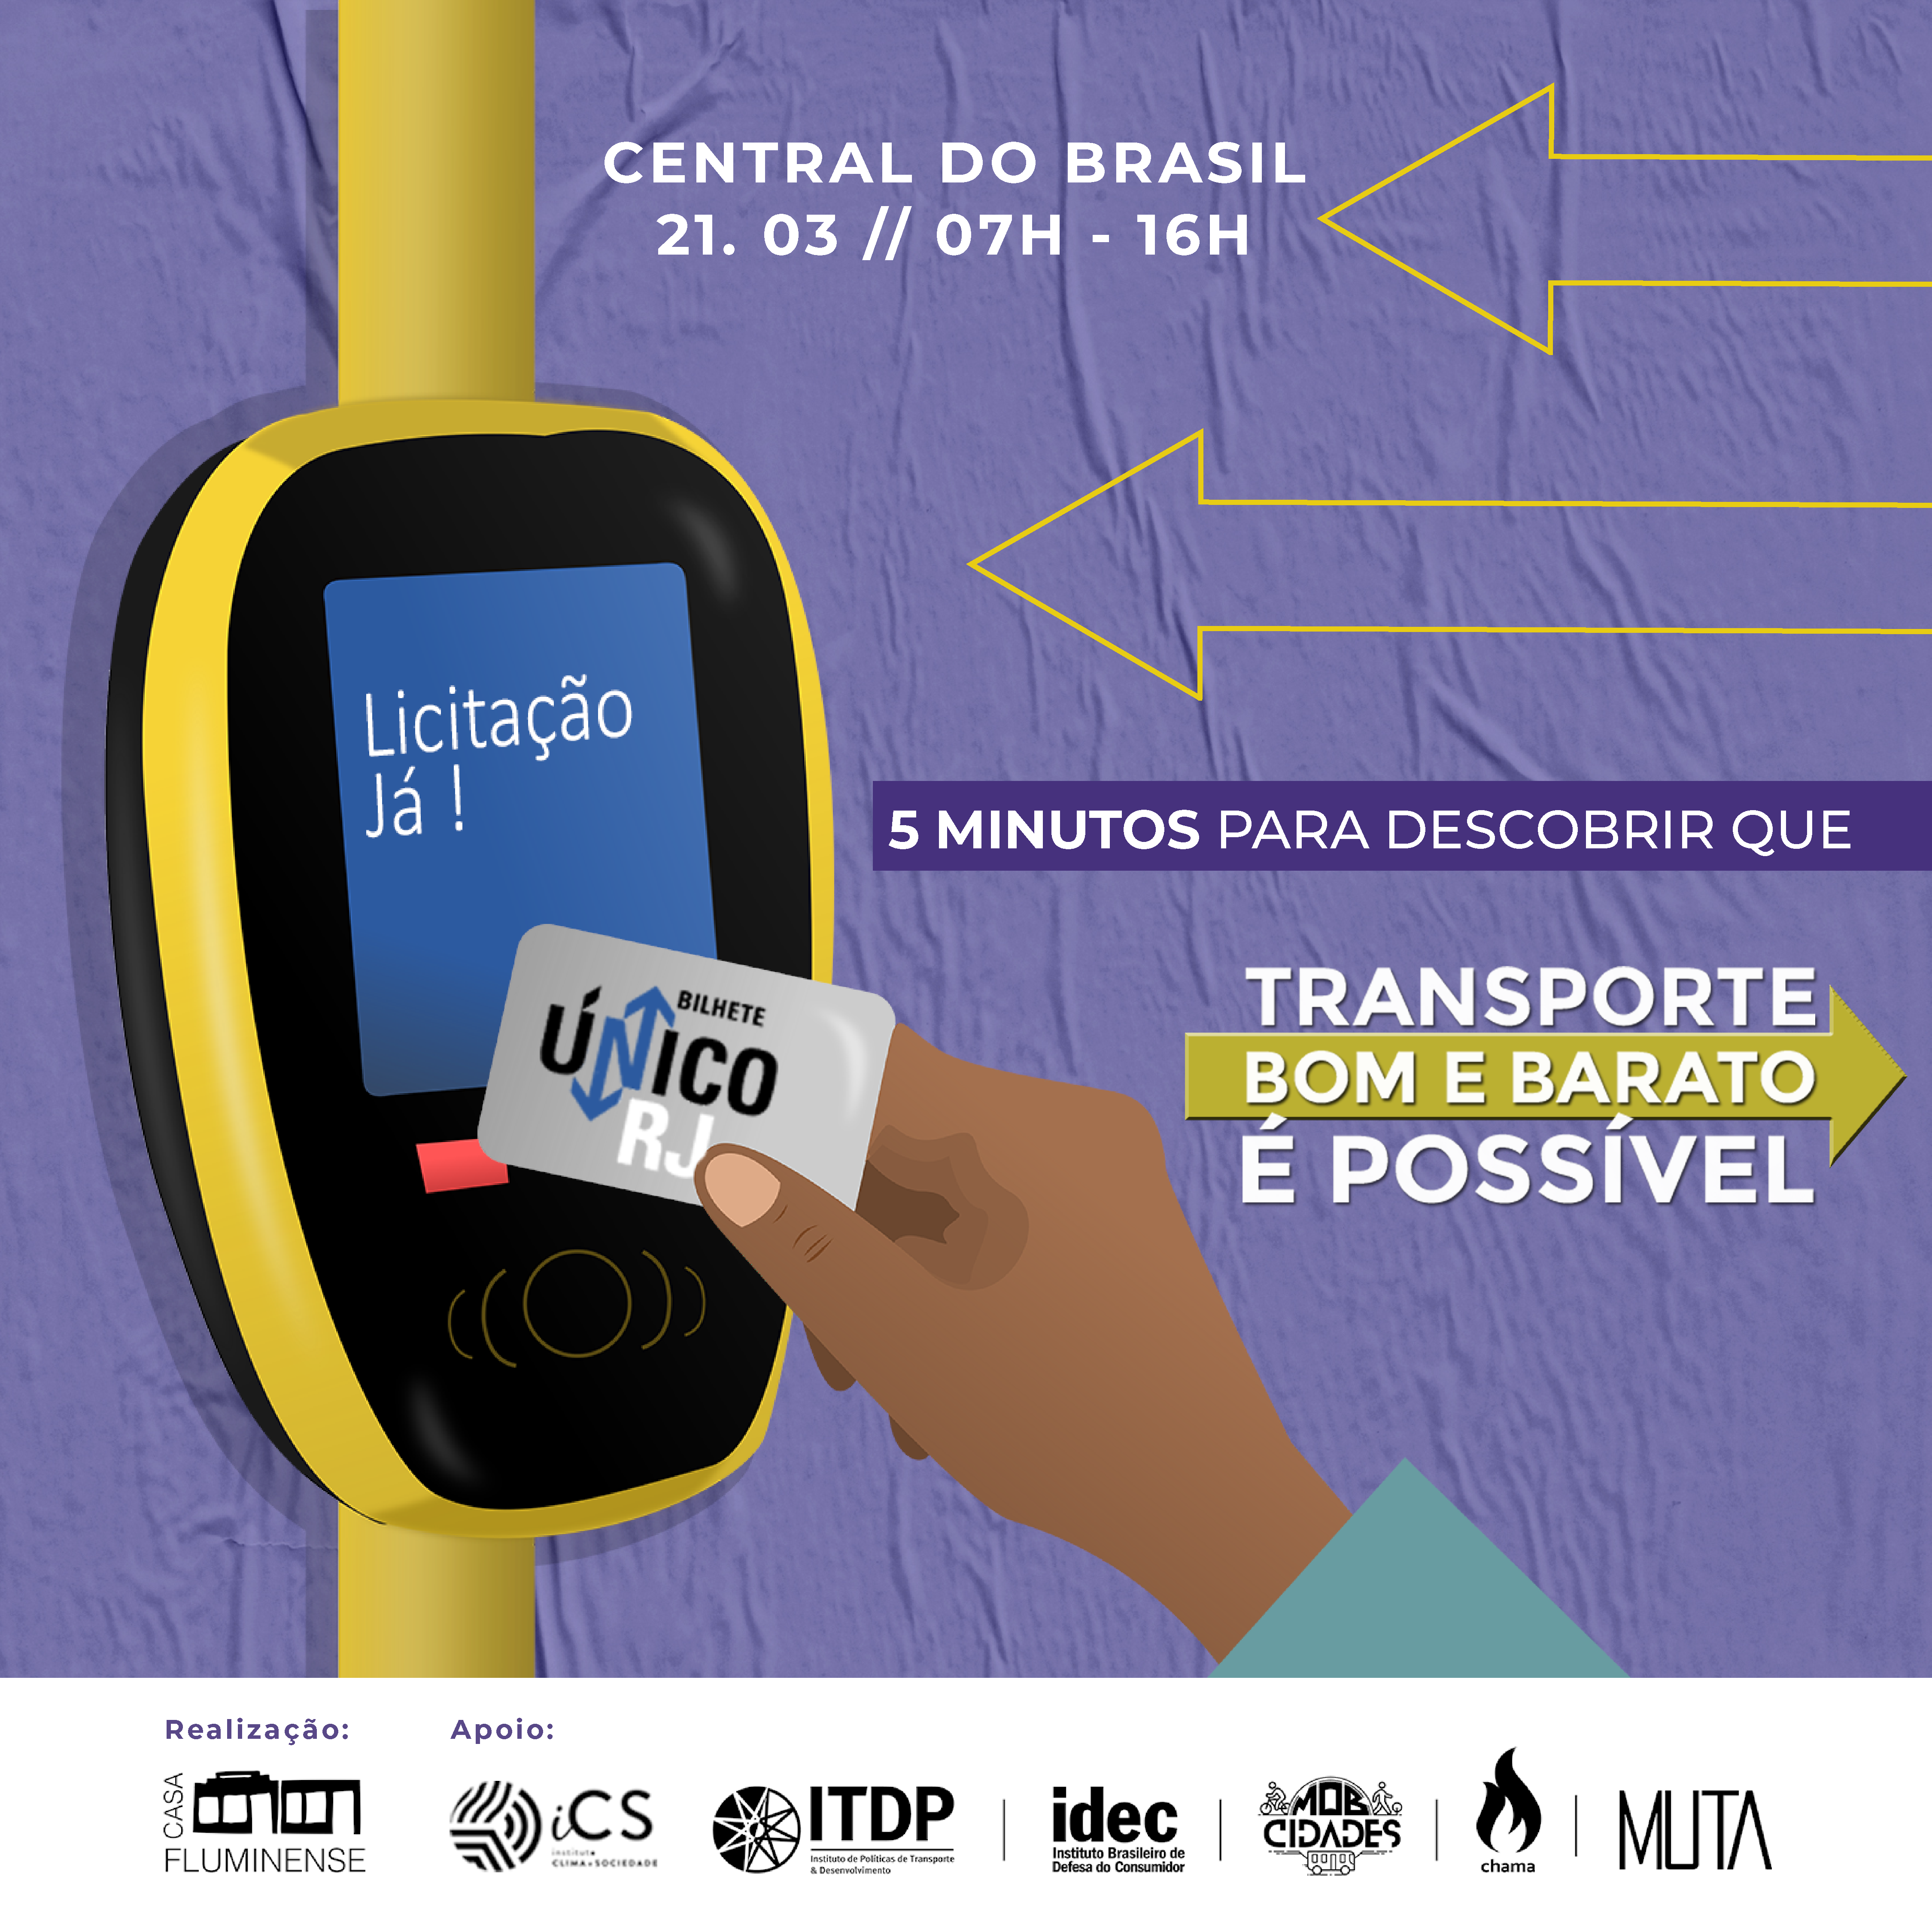 Casa Fluminense organiza intervenção com o objetivo questionar a qualidade dos transportes públicos